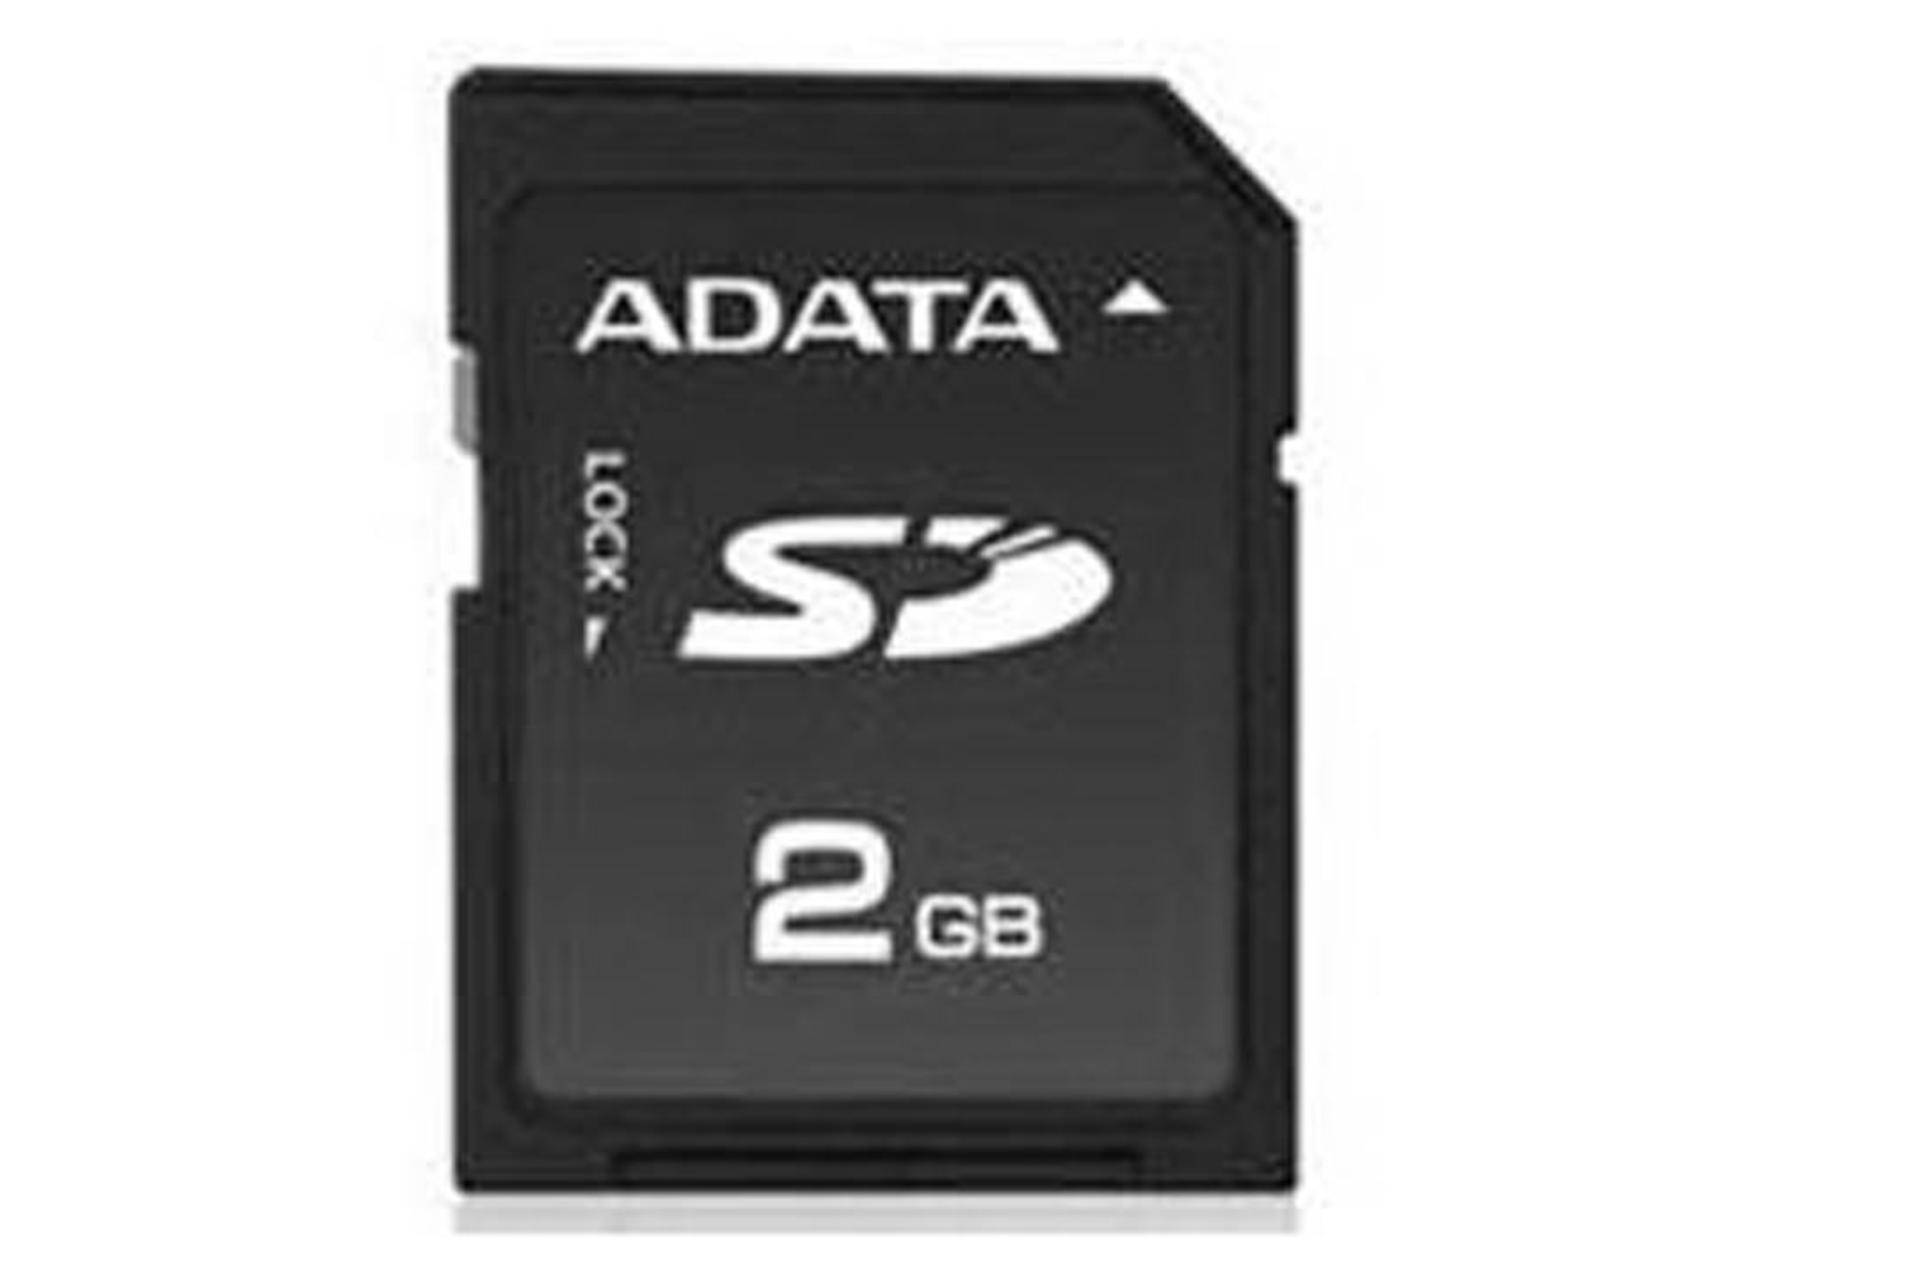 ADATA SDHC Class 2 2GB